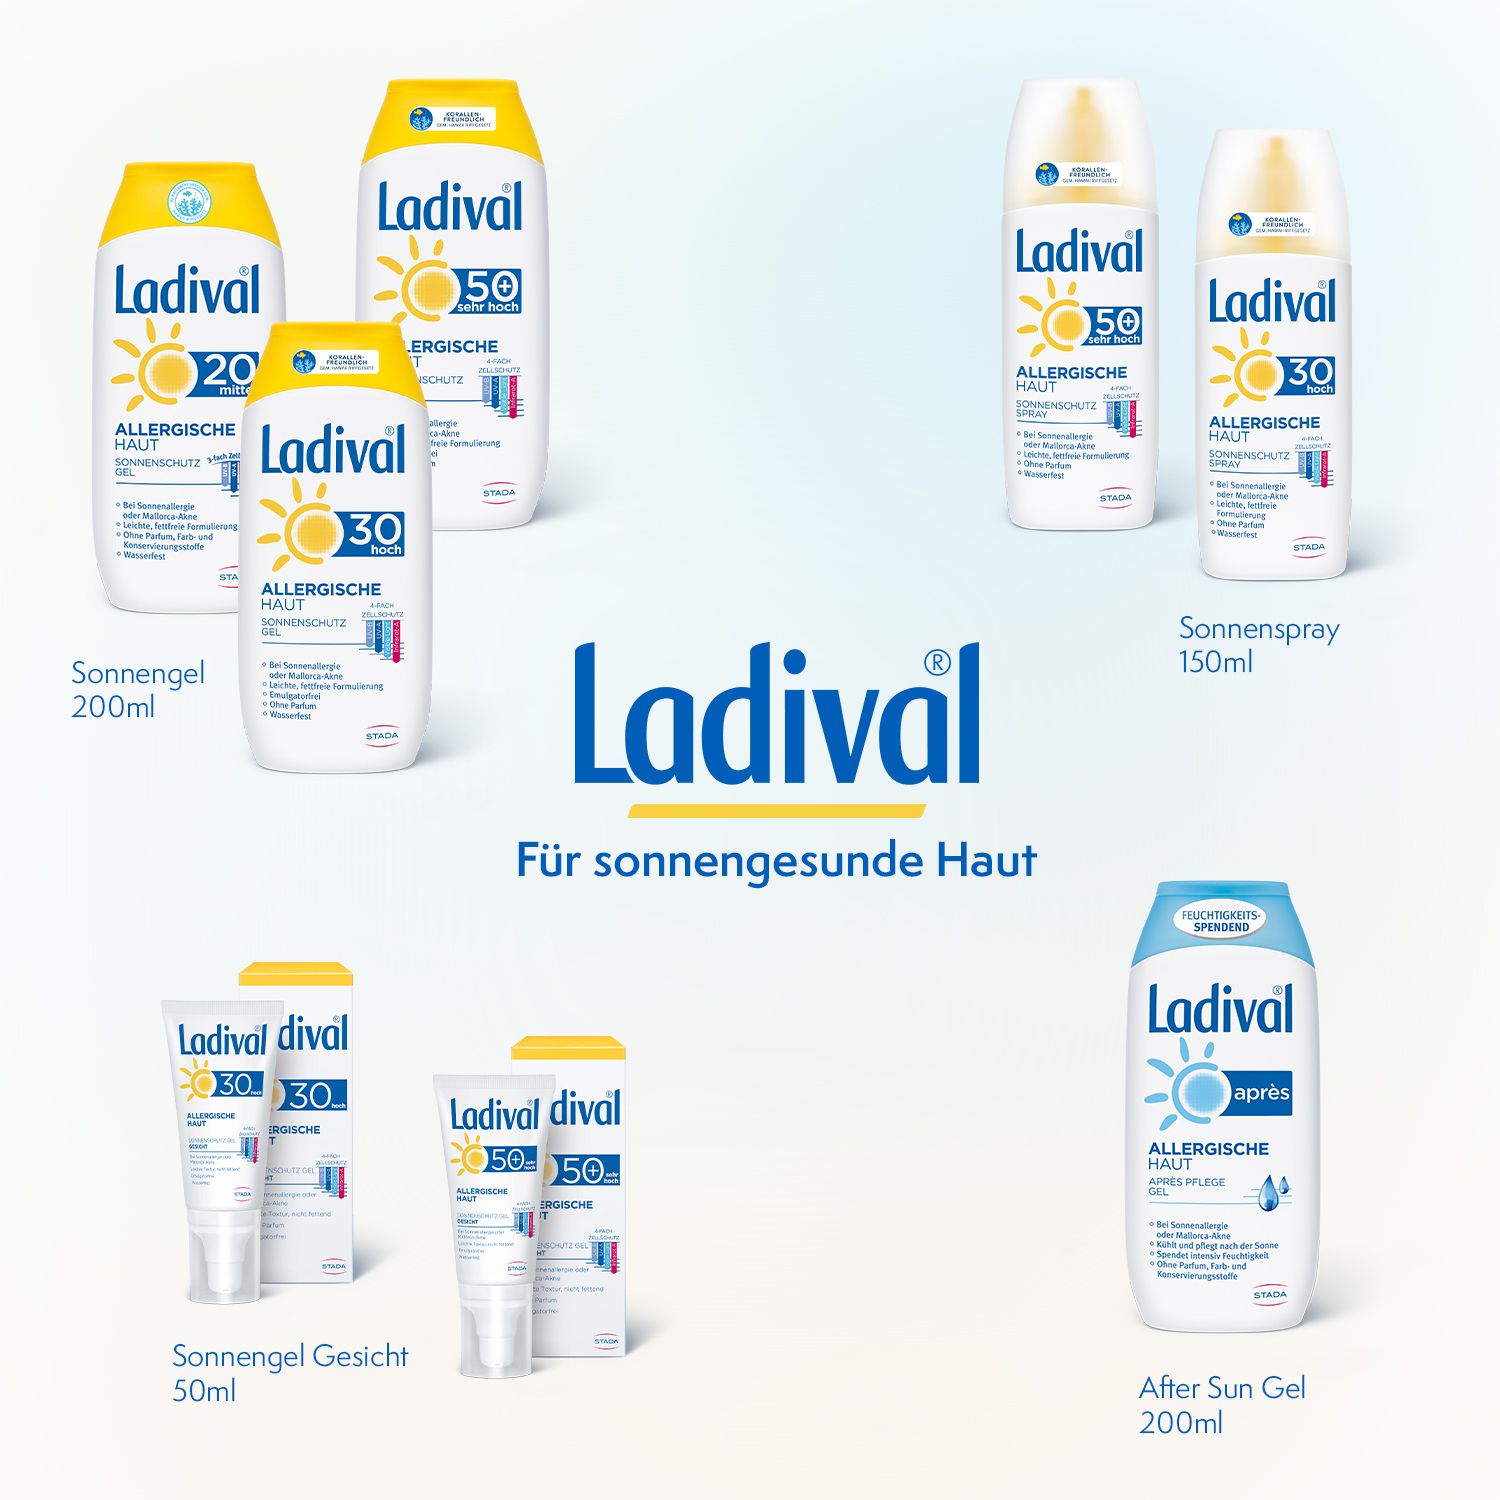 Ladival® allergische Haut Sonnenschutzgel LSF50+